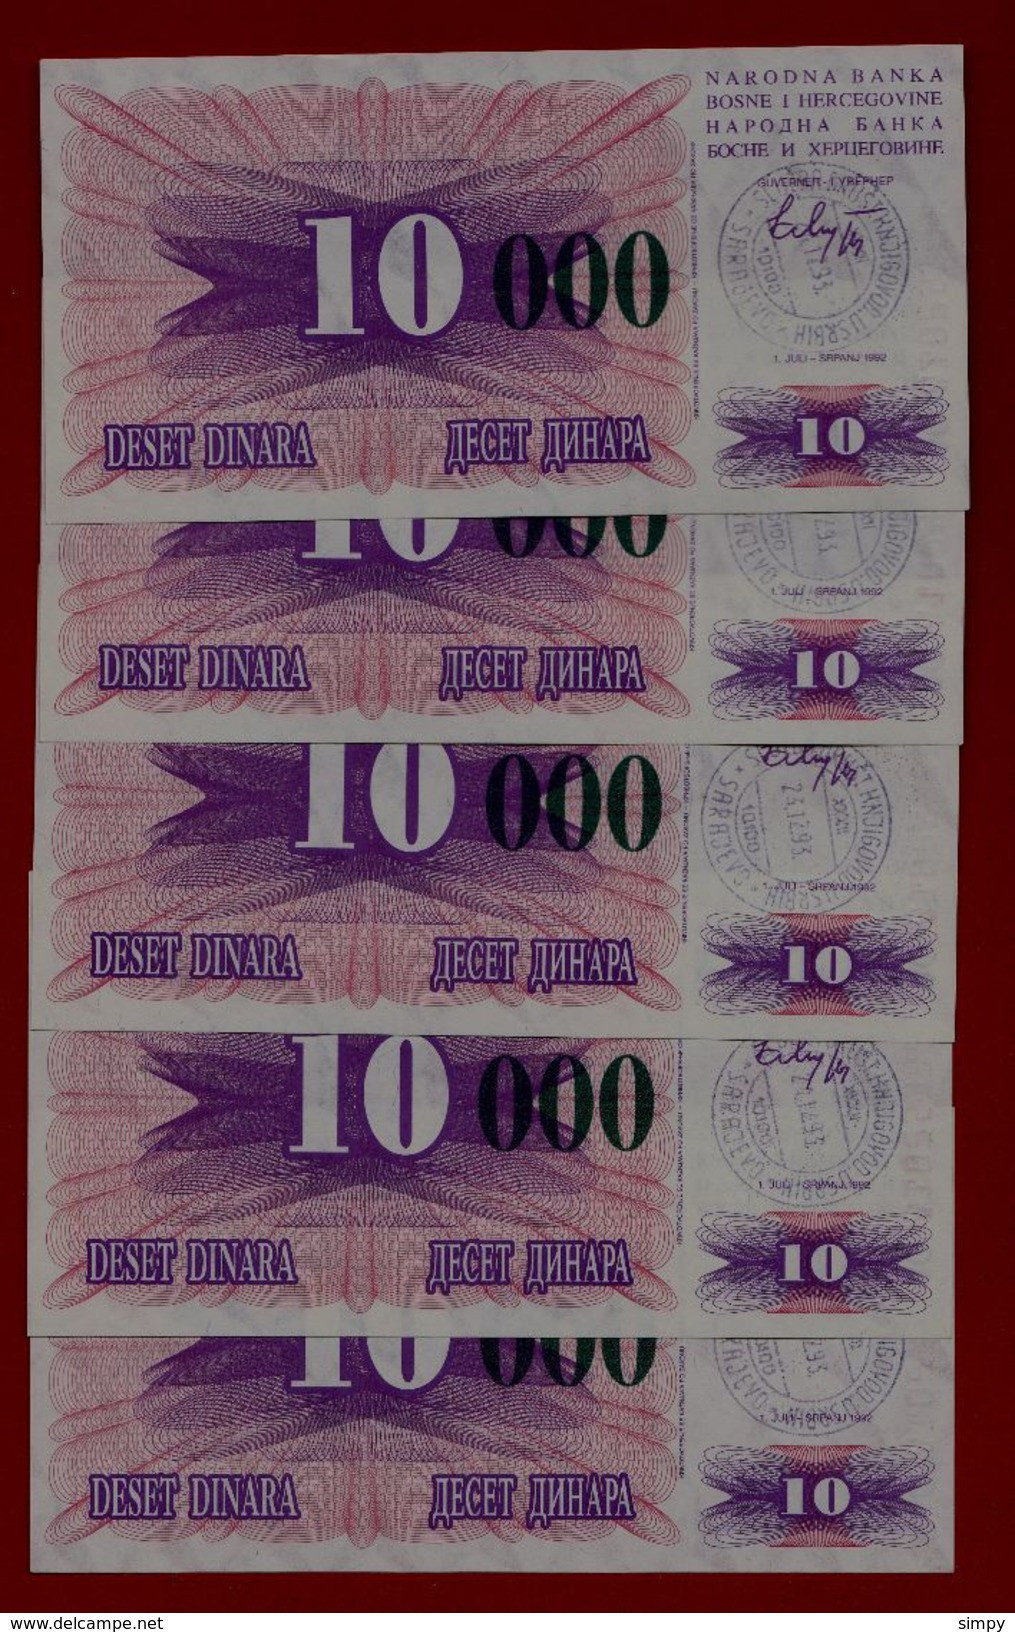 BOSNIA 5x 10.000 Dinara 24.12.1993 UNC Pick 53g   Handstamp Sarajevo - Bosnia Y Herzegovina